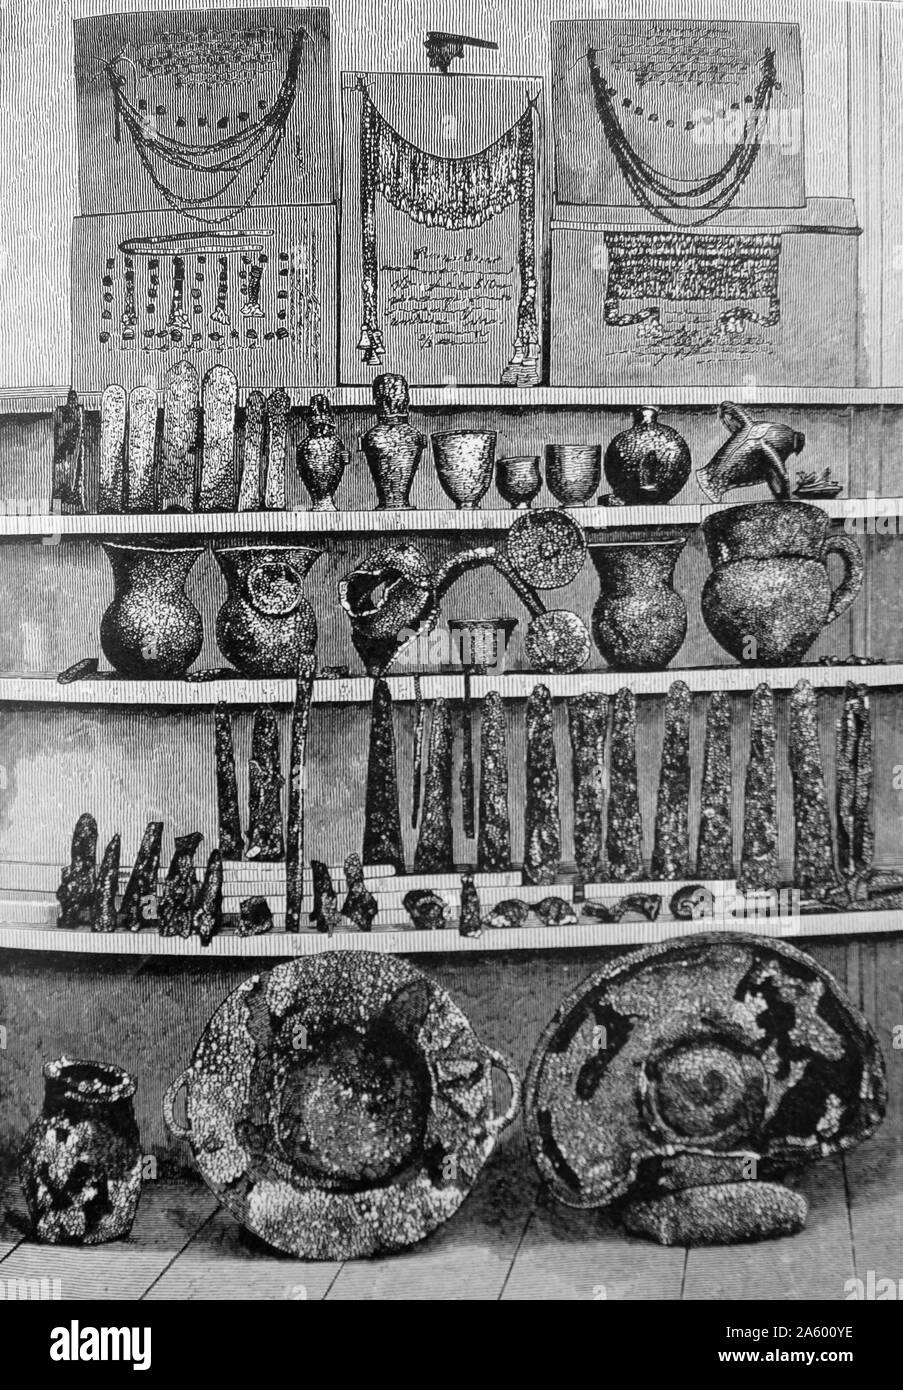 Schatz des Priamos, entdeckt ein Cache von gold und anderen Artefakten von klassischer Archäologe Heinrich Schliemann (1822-1890) ein deutscher Pionier auf dem Gebiet der Archäologie. Stockfoto